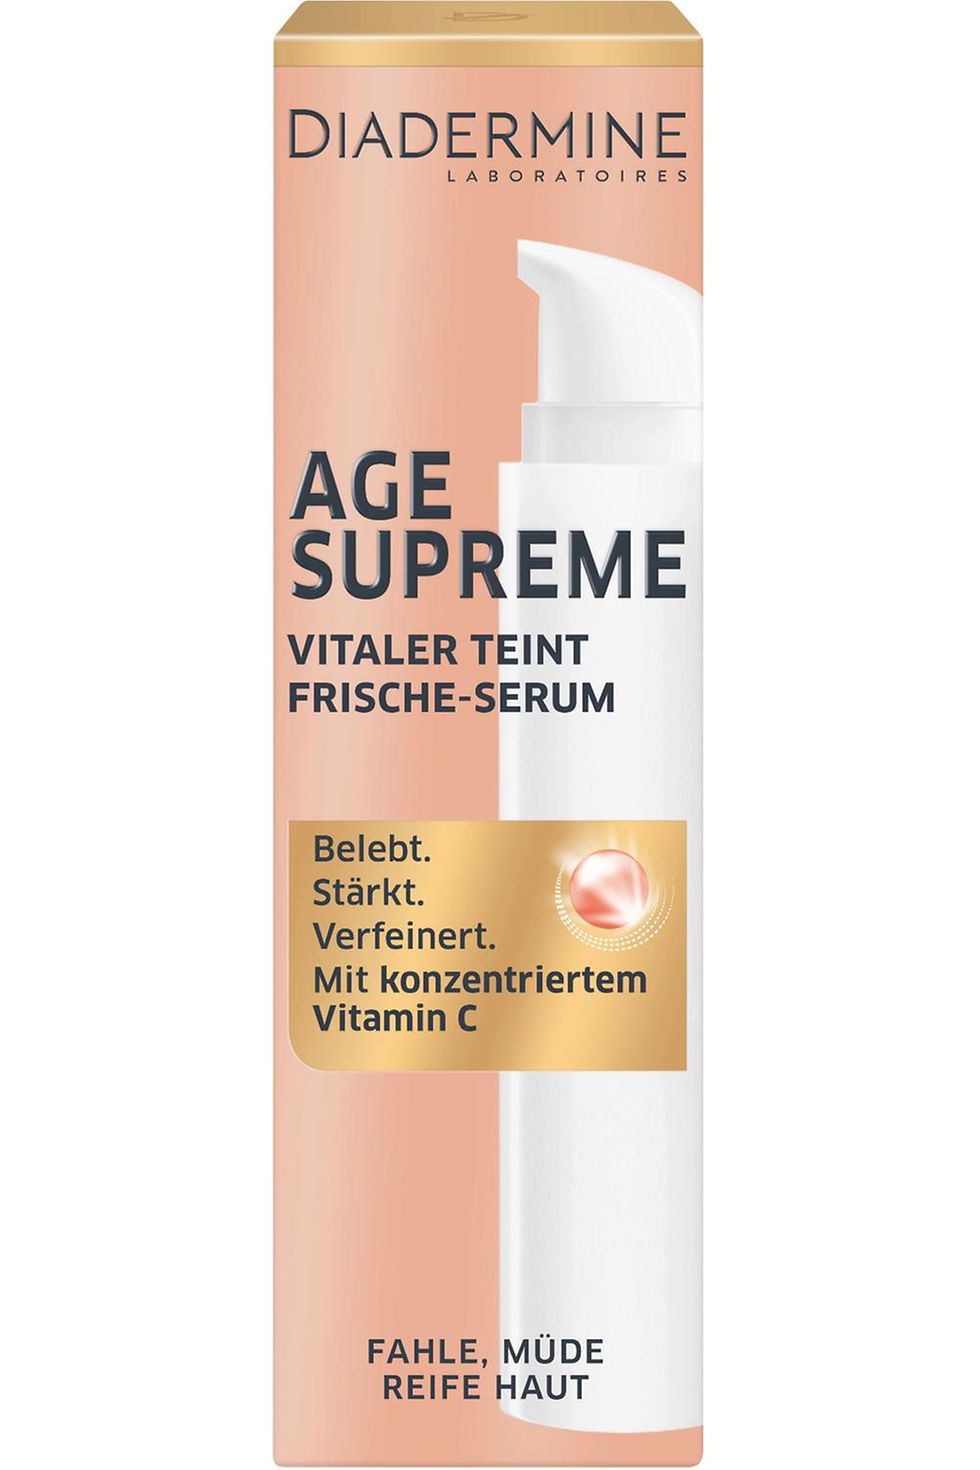 Diadermine Age Supreme Vitaler Teint Frische-Serum